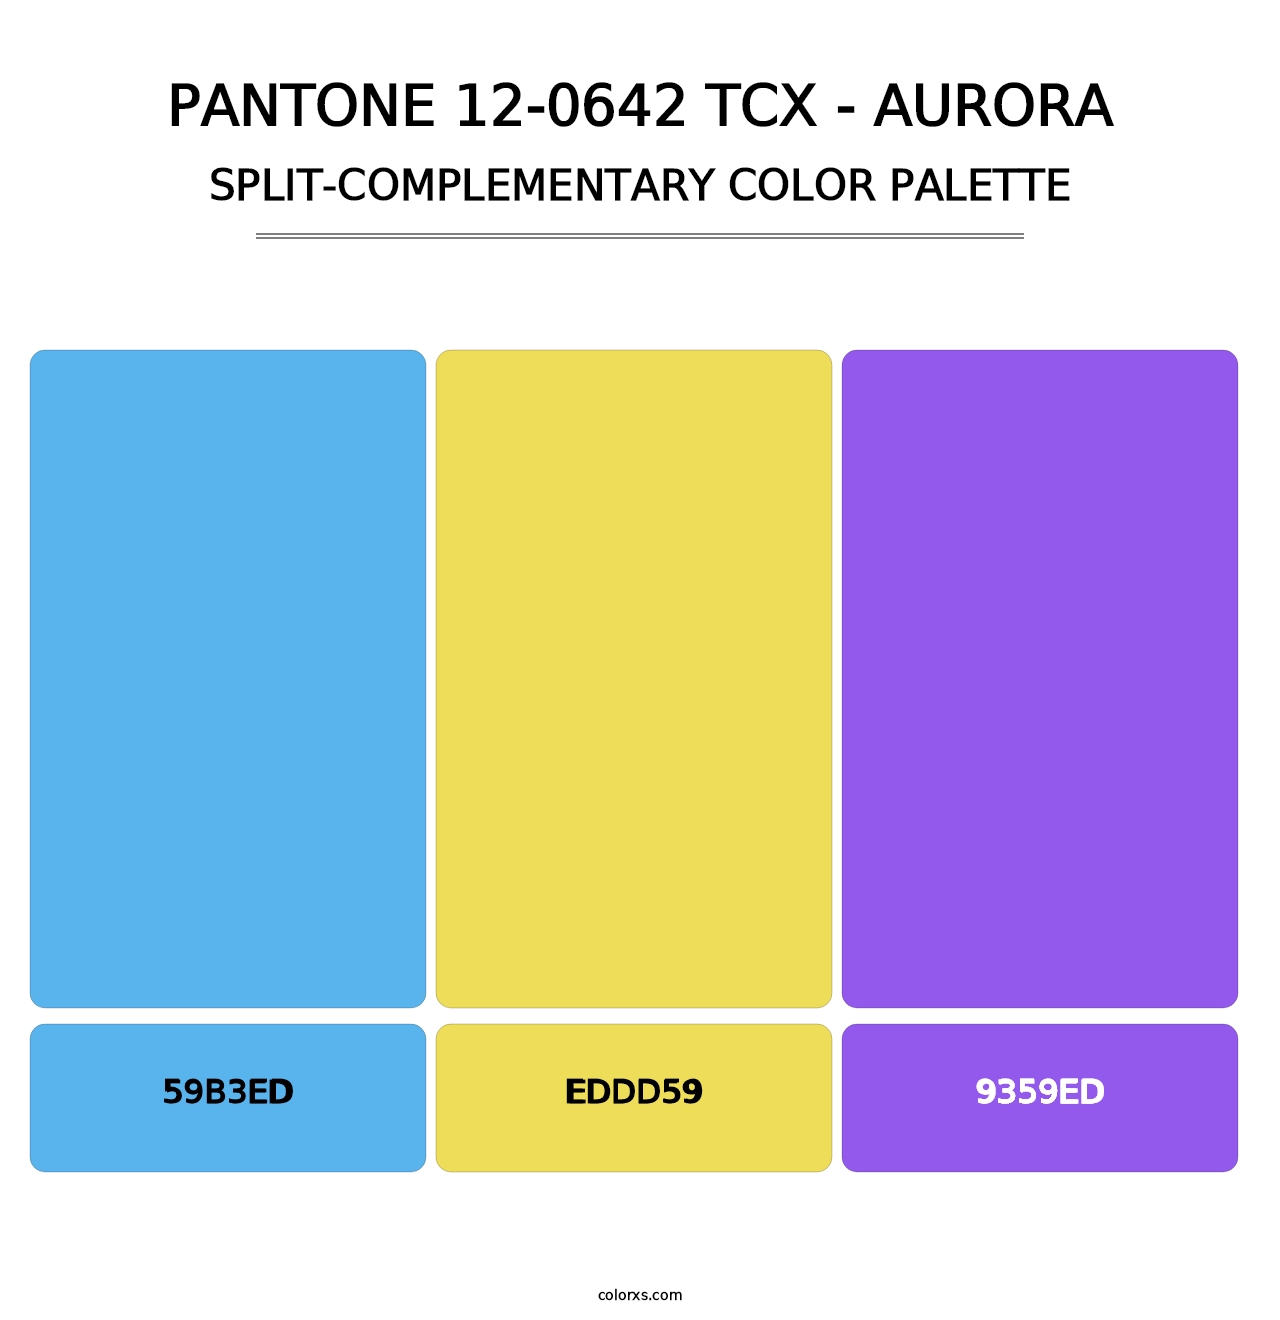 PANTONE 12-0642 TCX - Aurora - Split-Complementary Color Palette